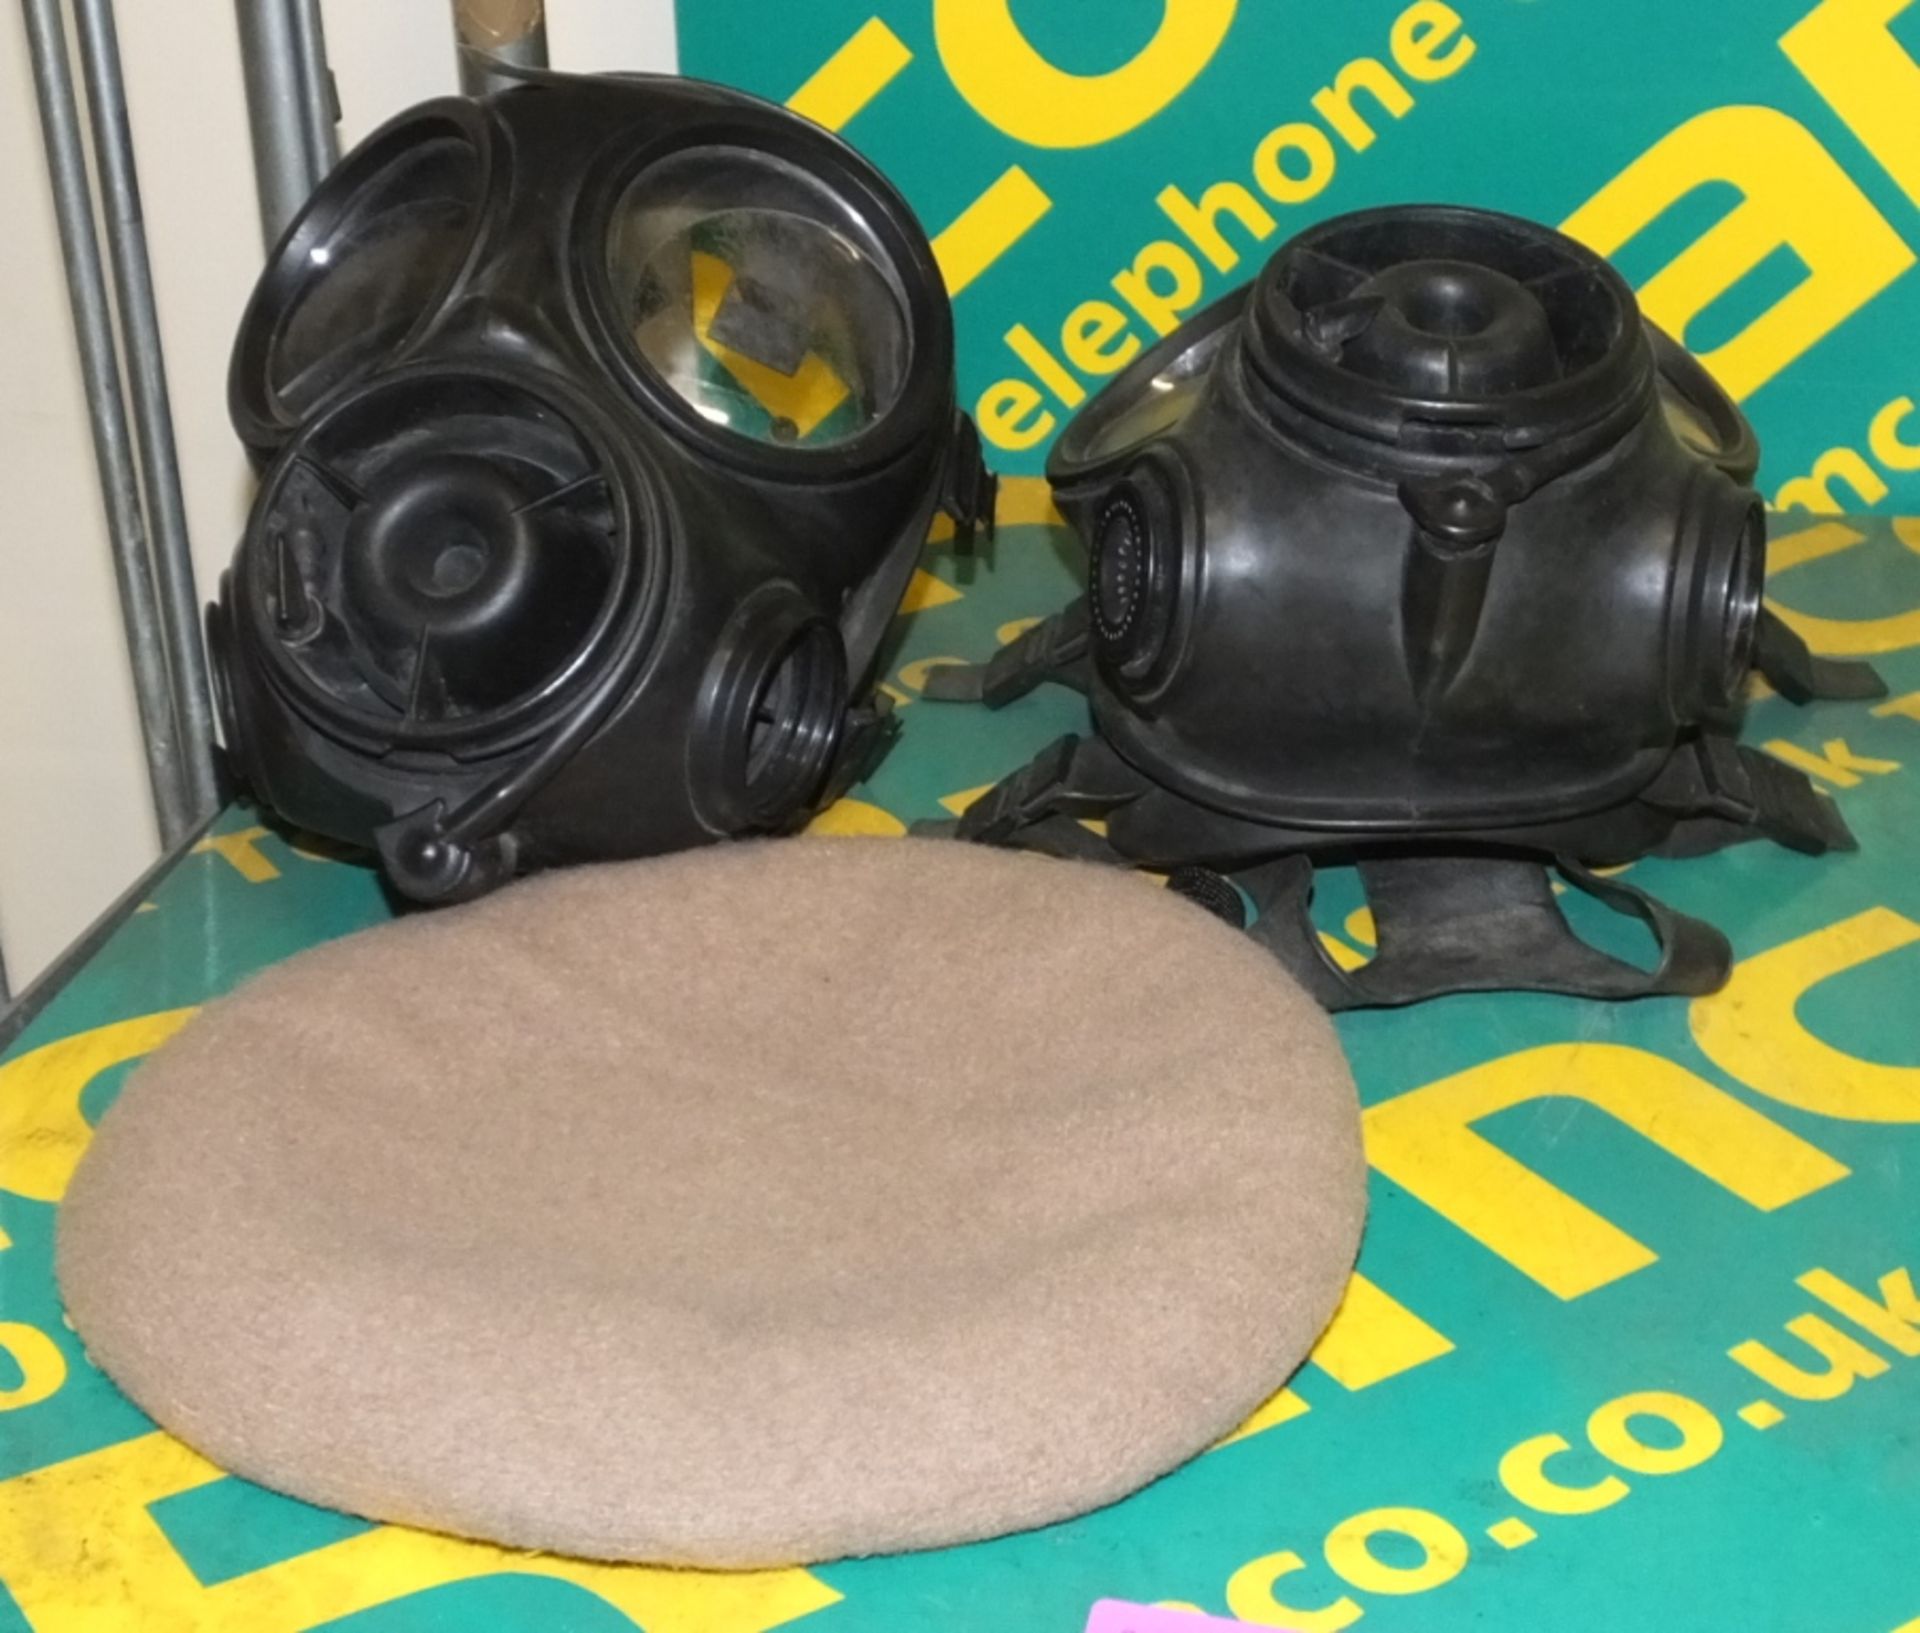 2x Gas masks, SAS beret